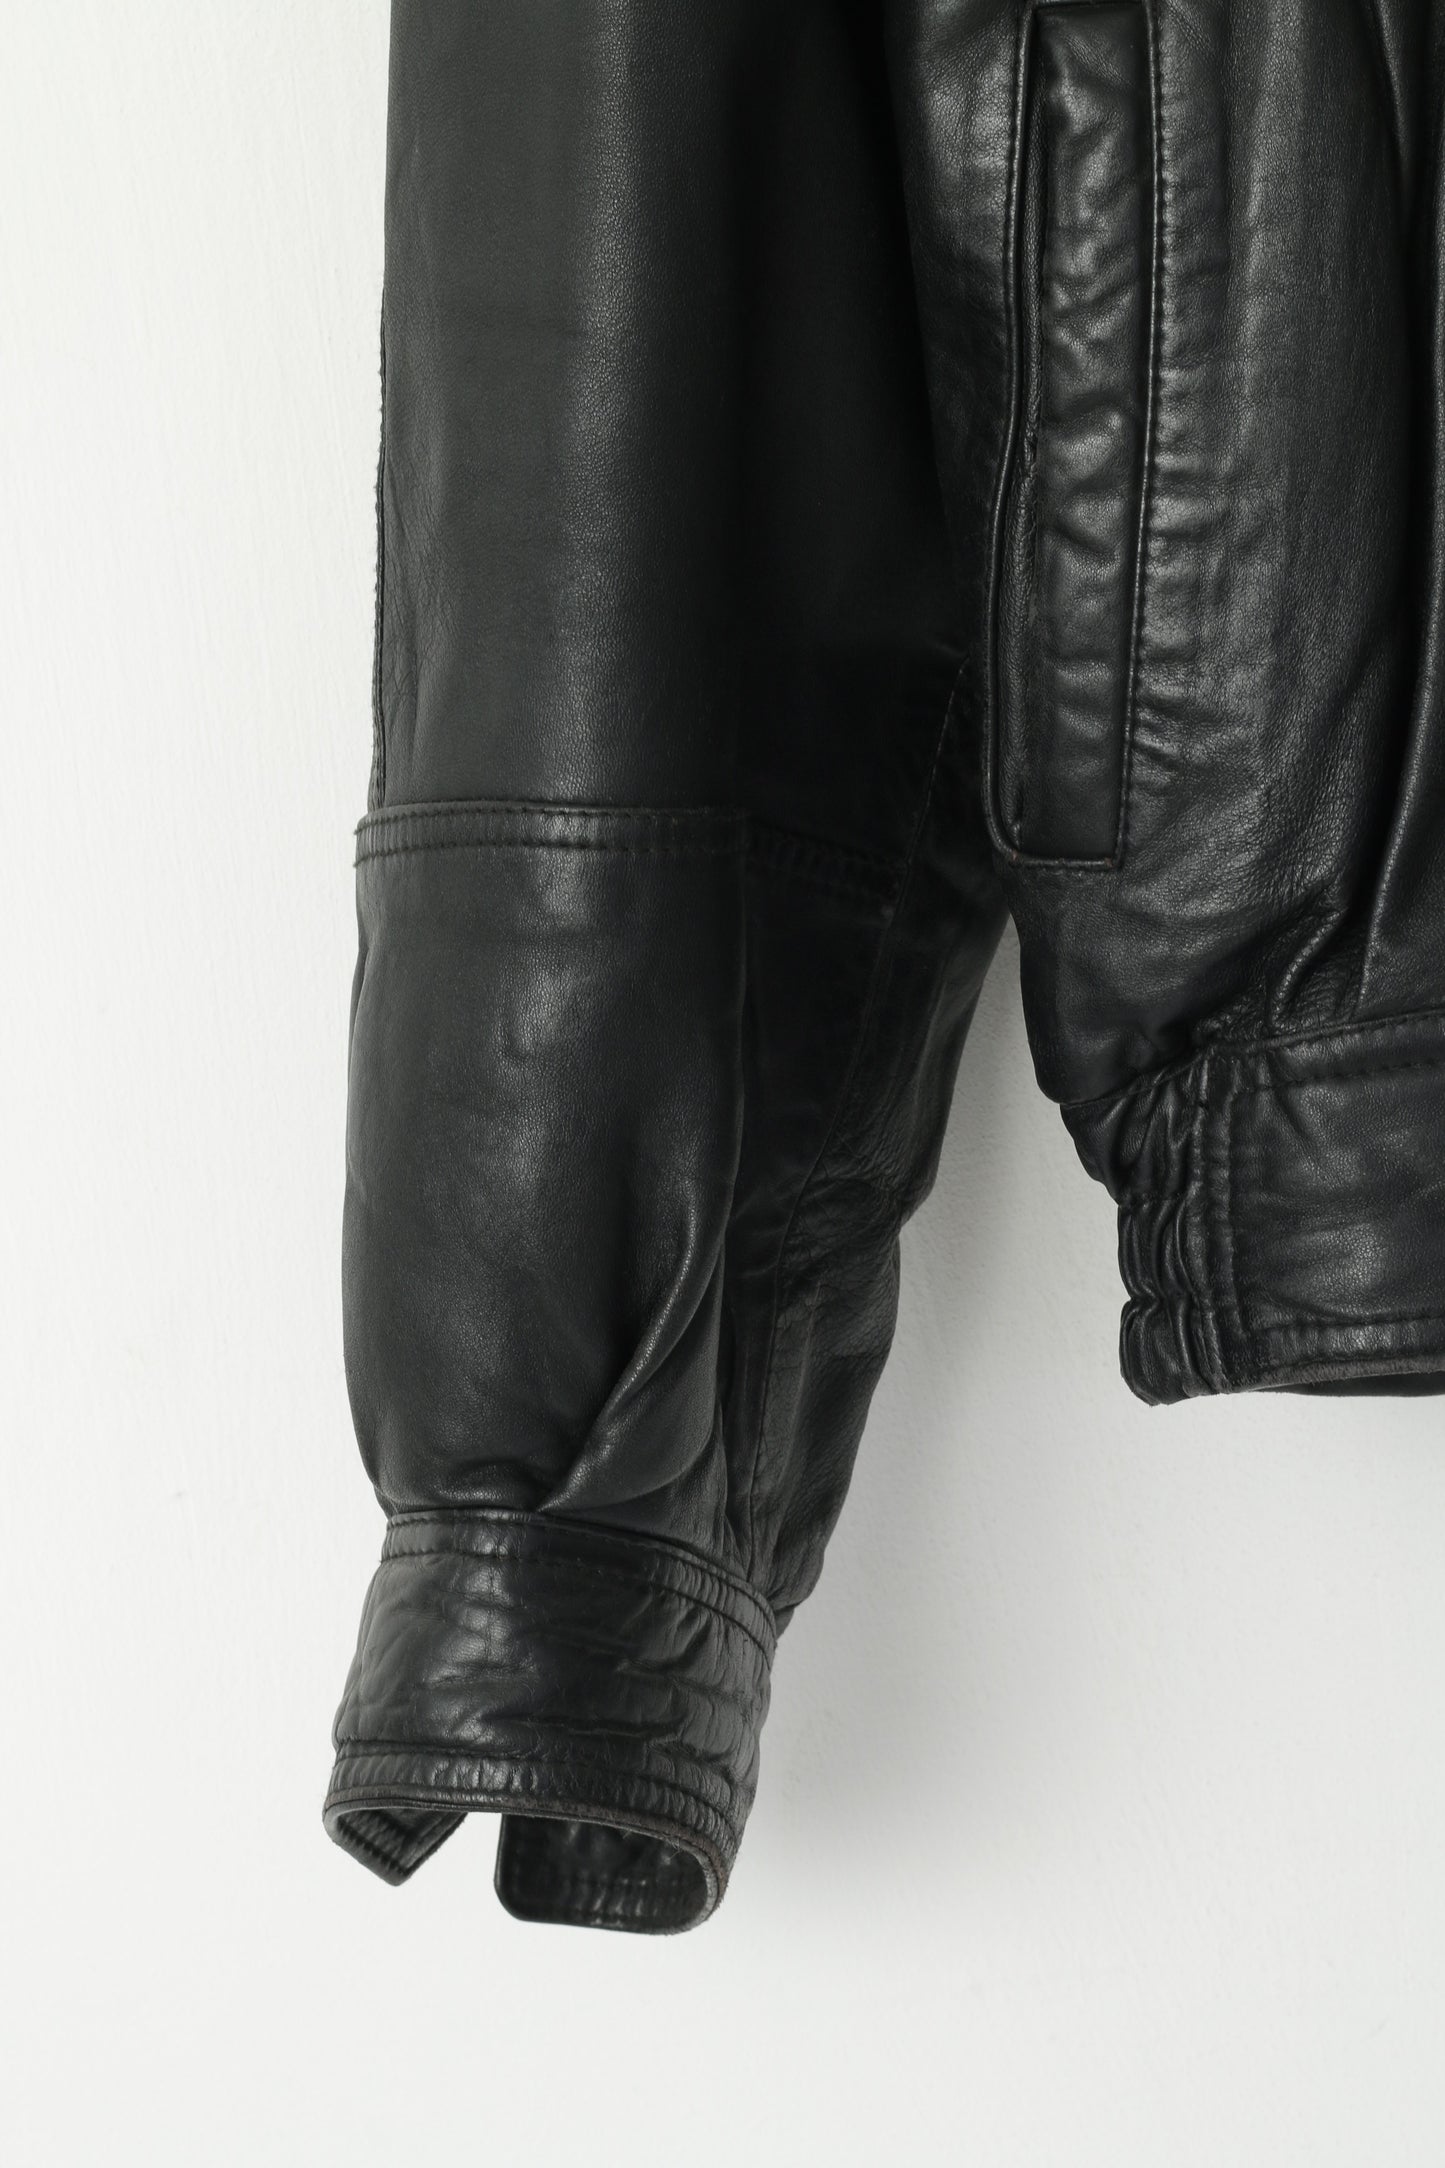 Marcos Men 52 L Bomber Jacket Black Leather Vintage Made In Italy Biker Shoulder Pads